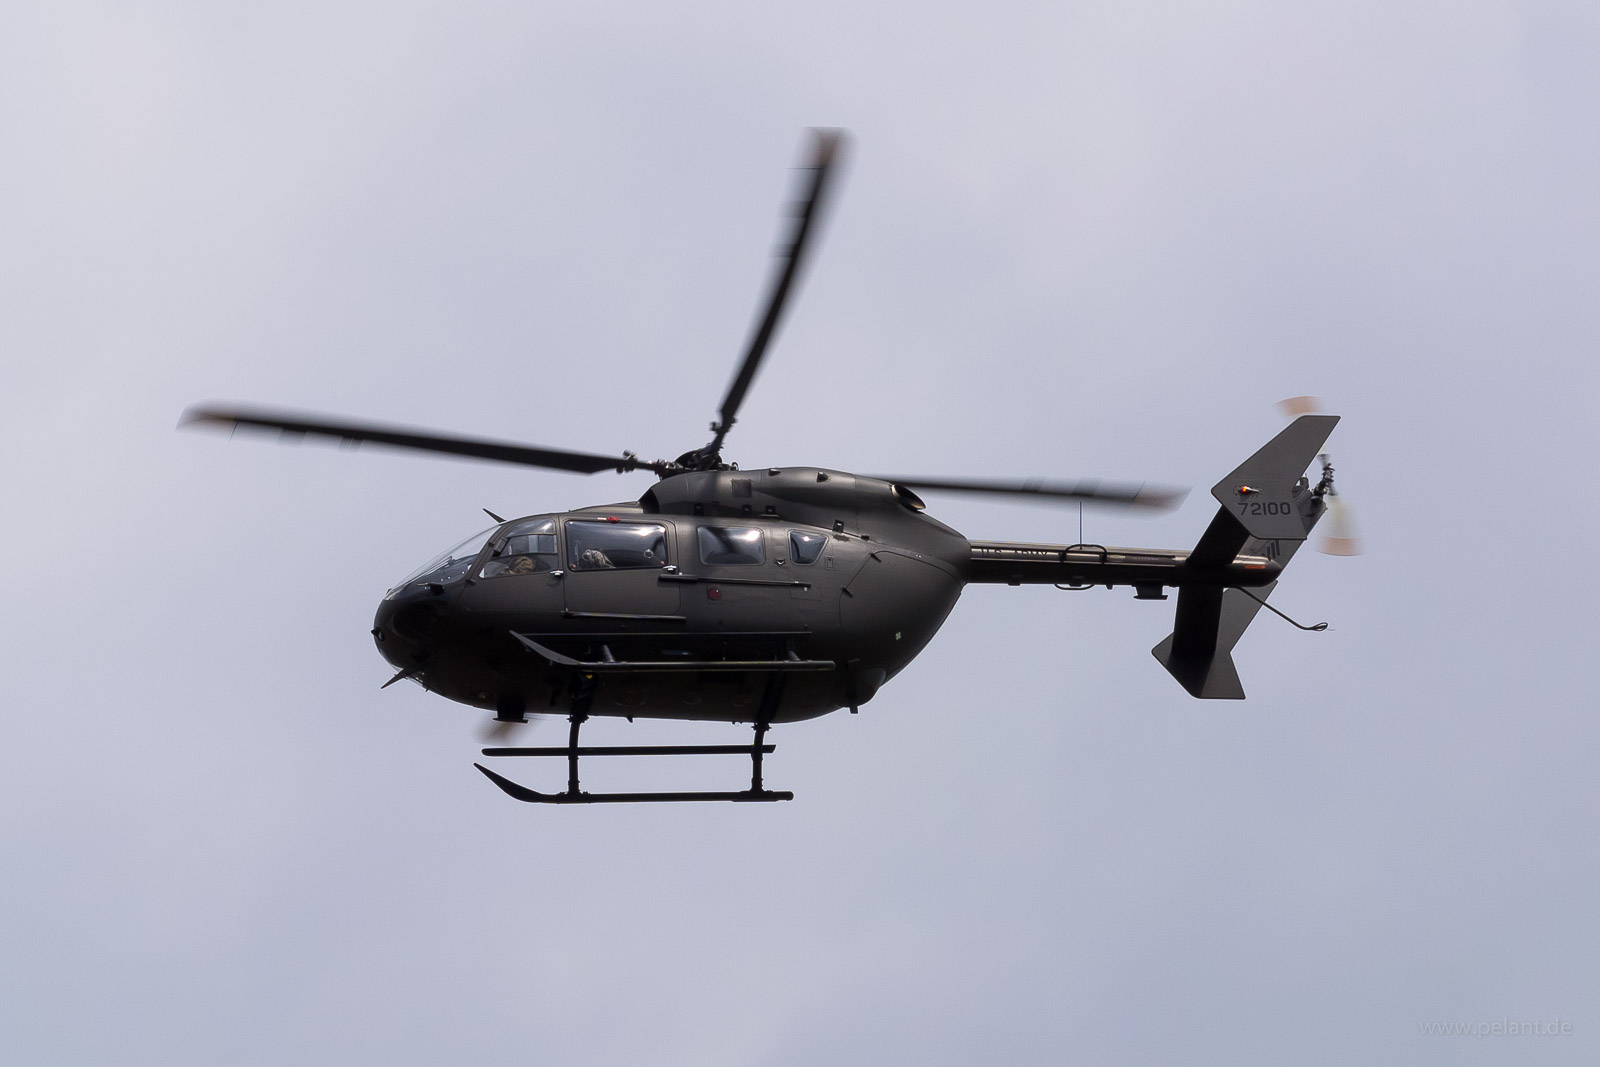 09-72100 USAF, -Army etc. UH-72A in Stuttgart / STR